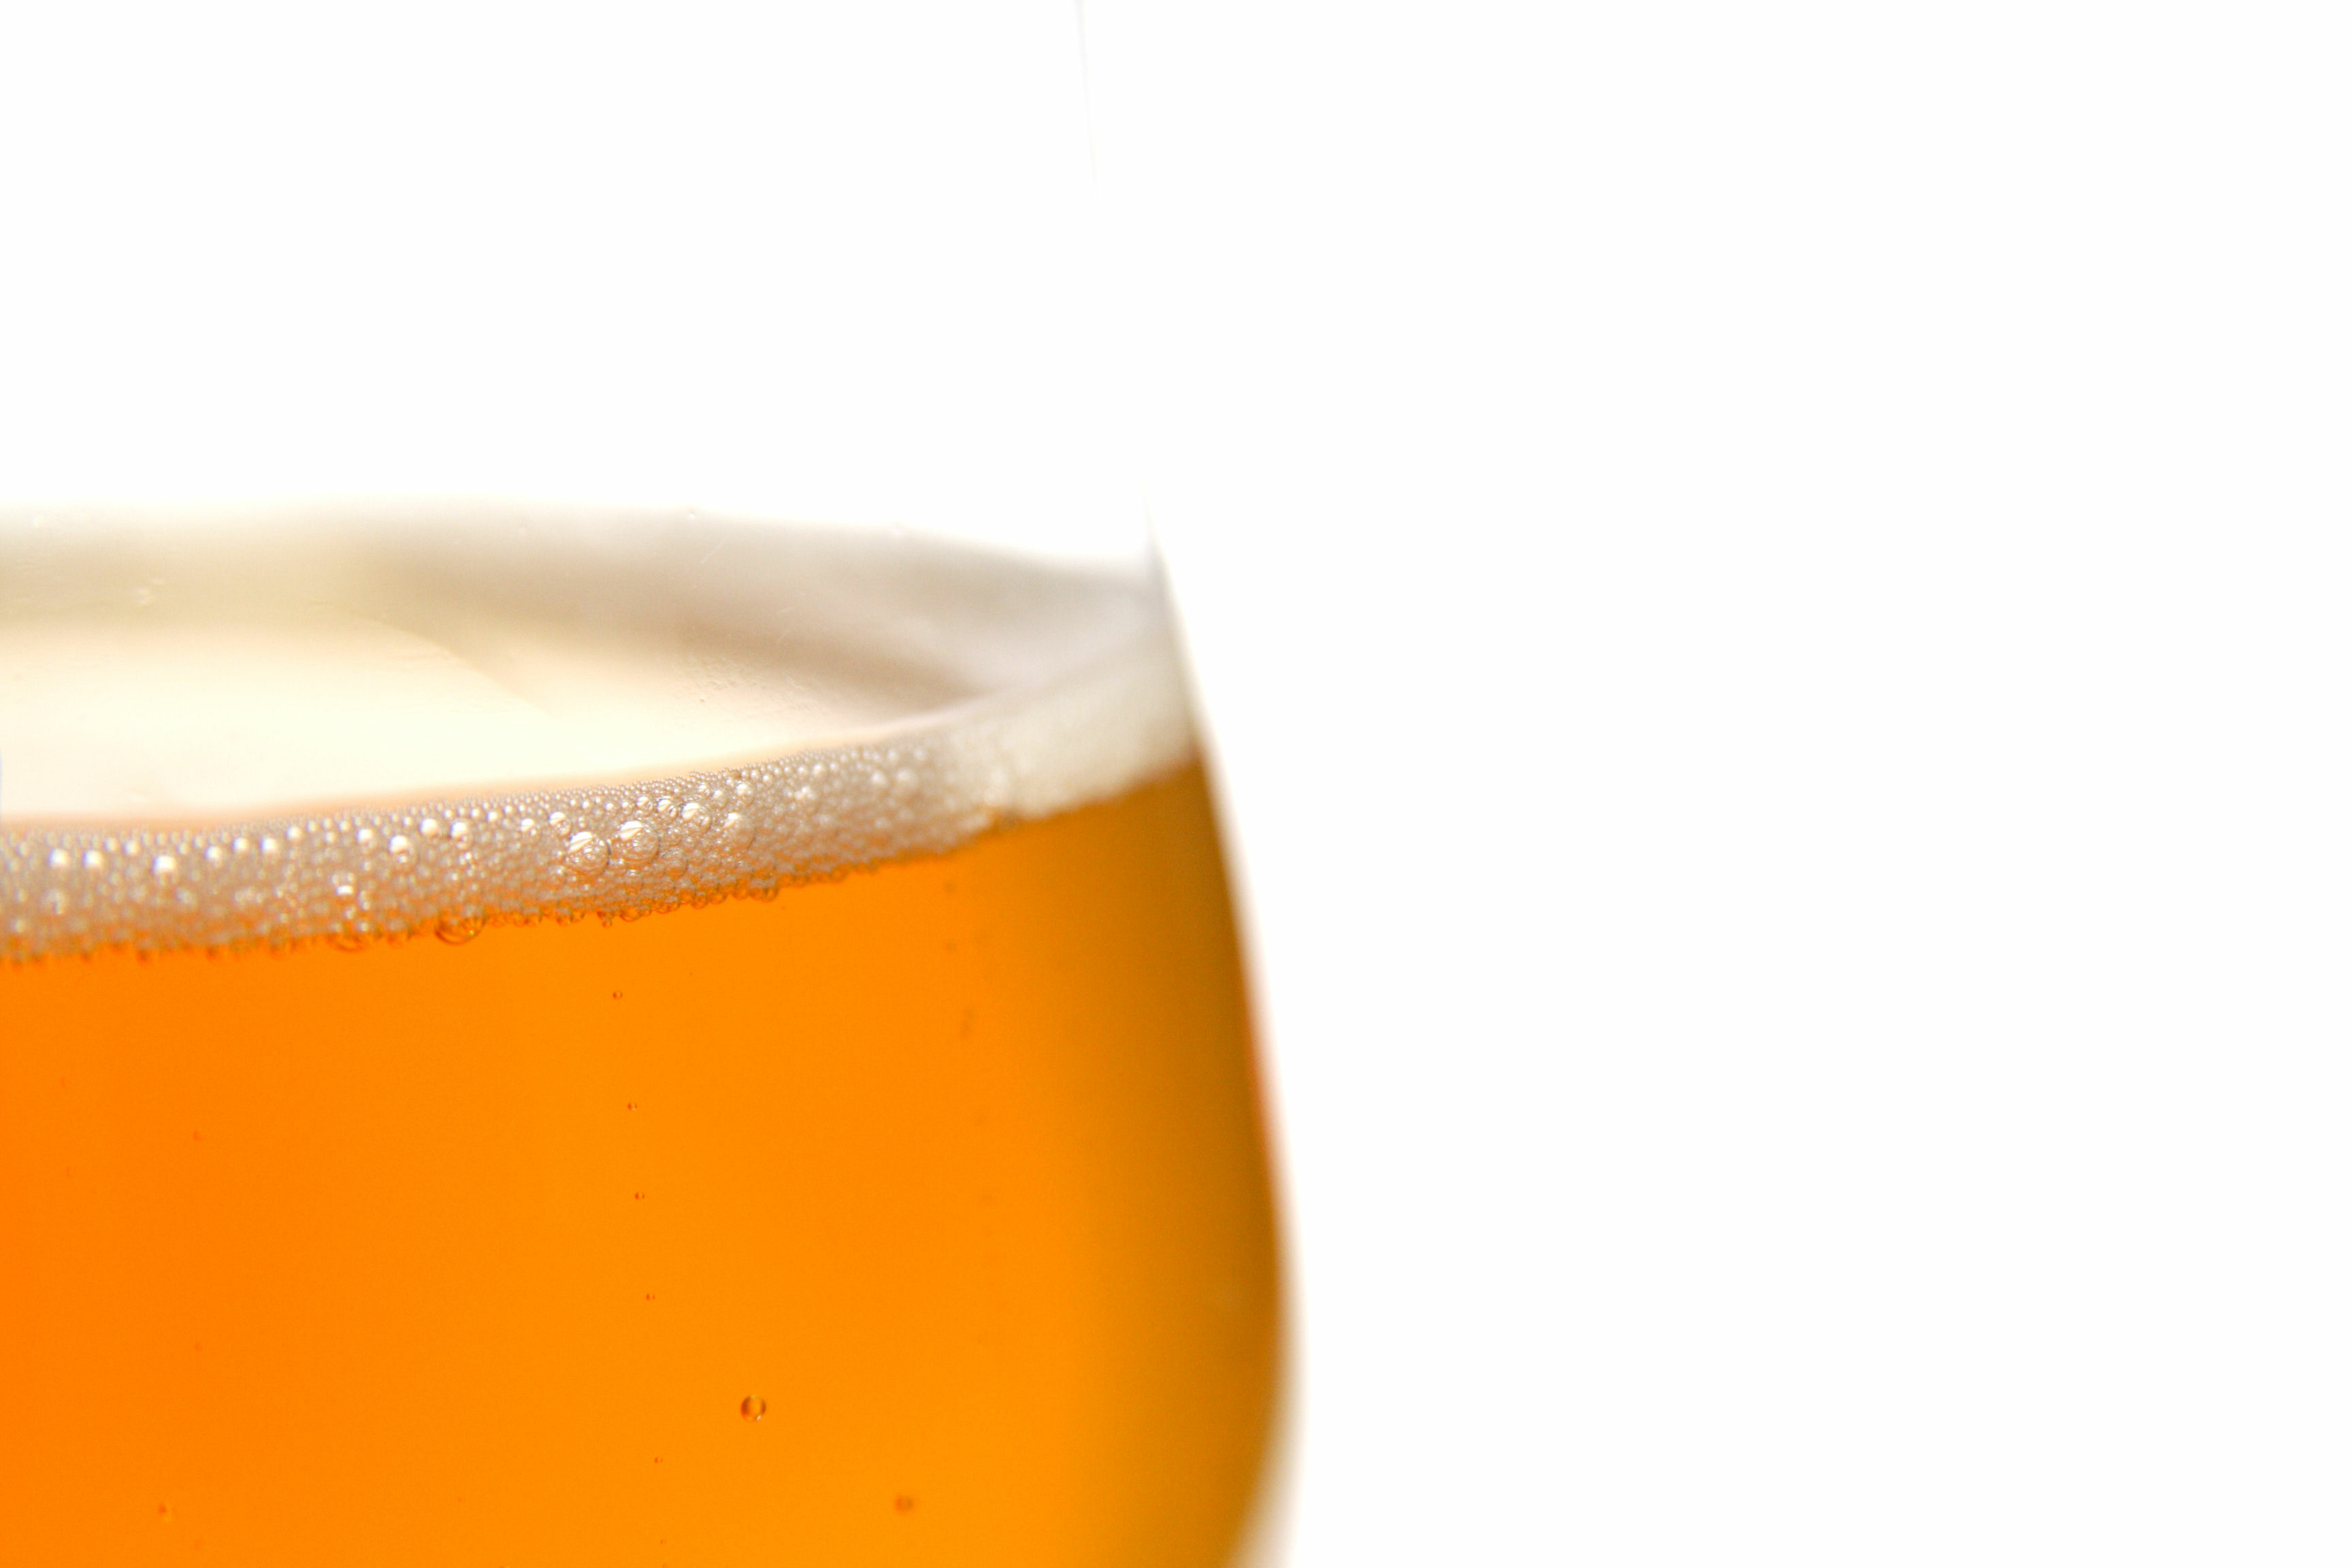 La bière blonde, qu'elle contienne de l'alcool ou non, pourrait favoriser la présence de bonnes bactéries dans le microbiote intestinal (Visuel Adobe Stock 1635028) 